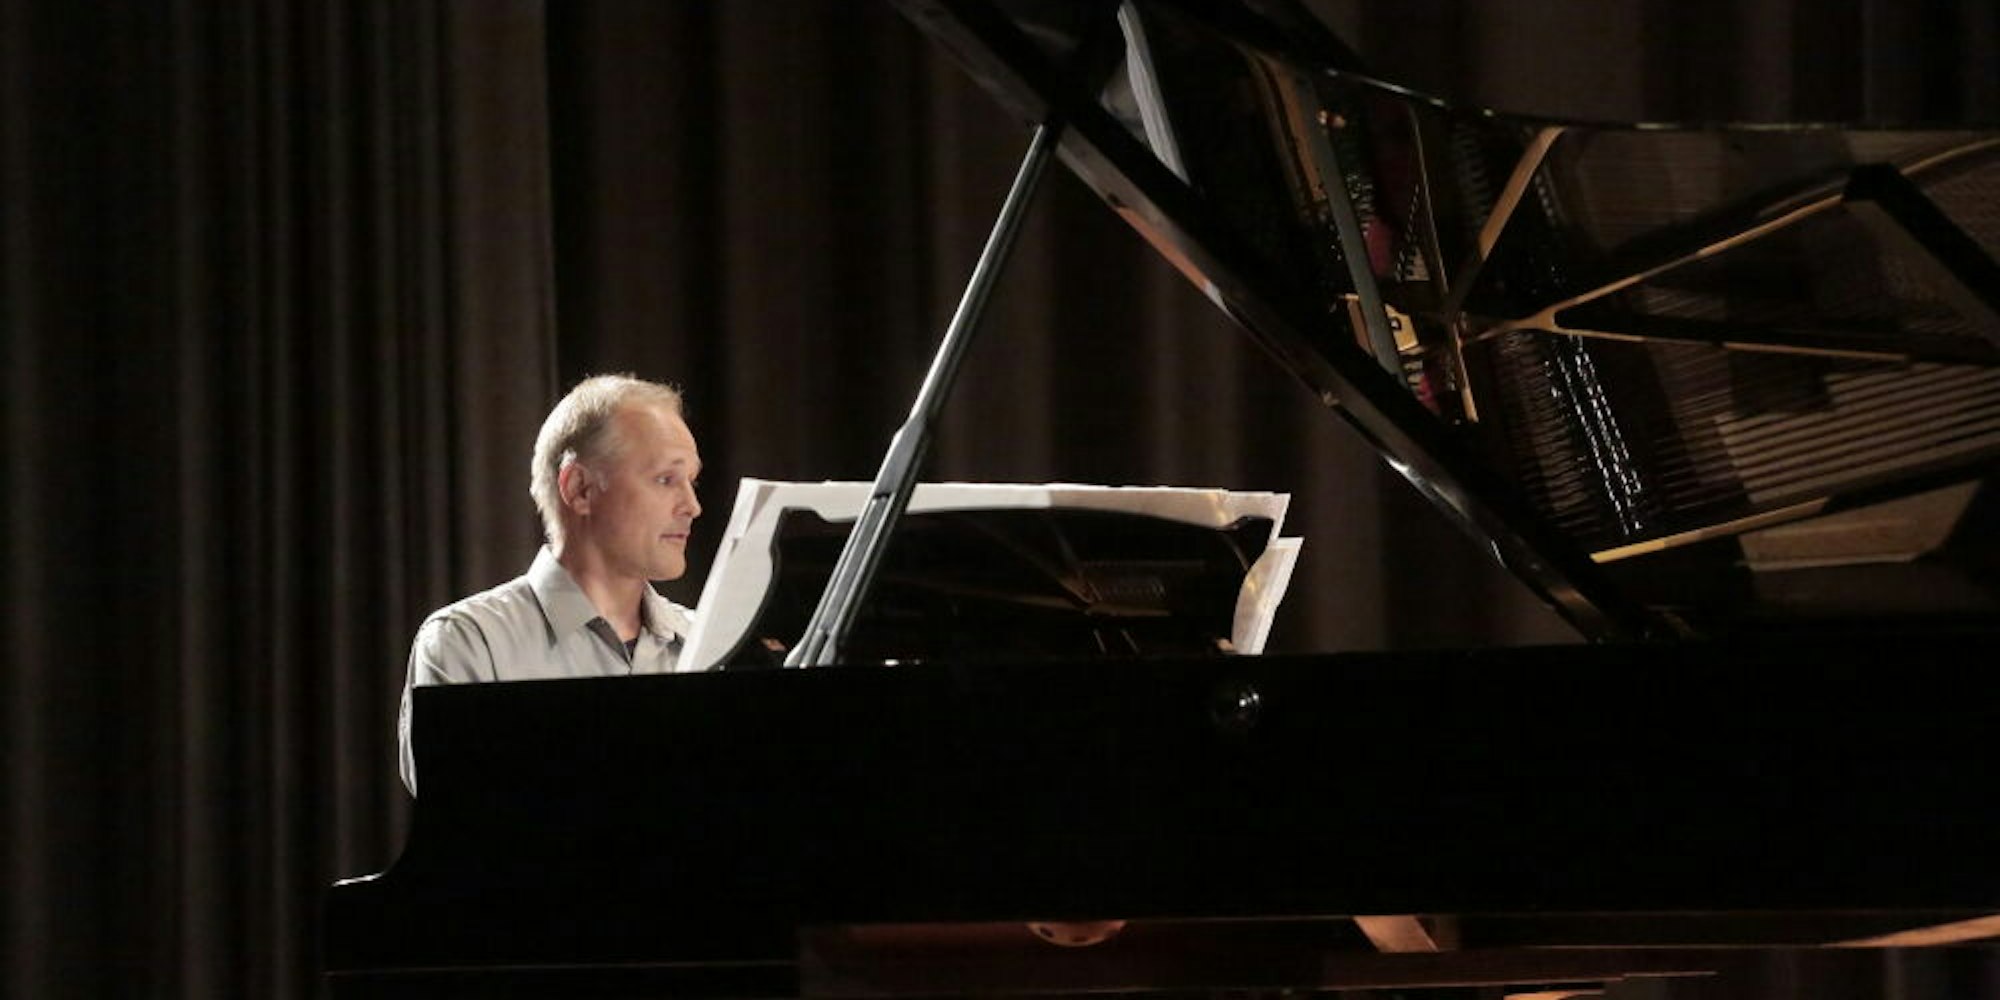 Komponist Falko Steinbach hofft darauf, dass das Klavierfestival im Sommer wieder in Lindlar stattfinden kann. (Archivfoto)